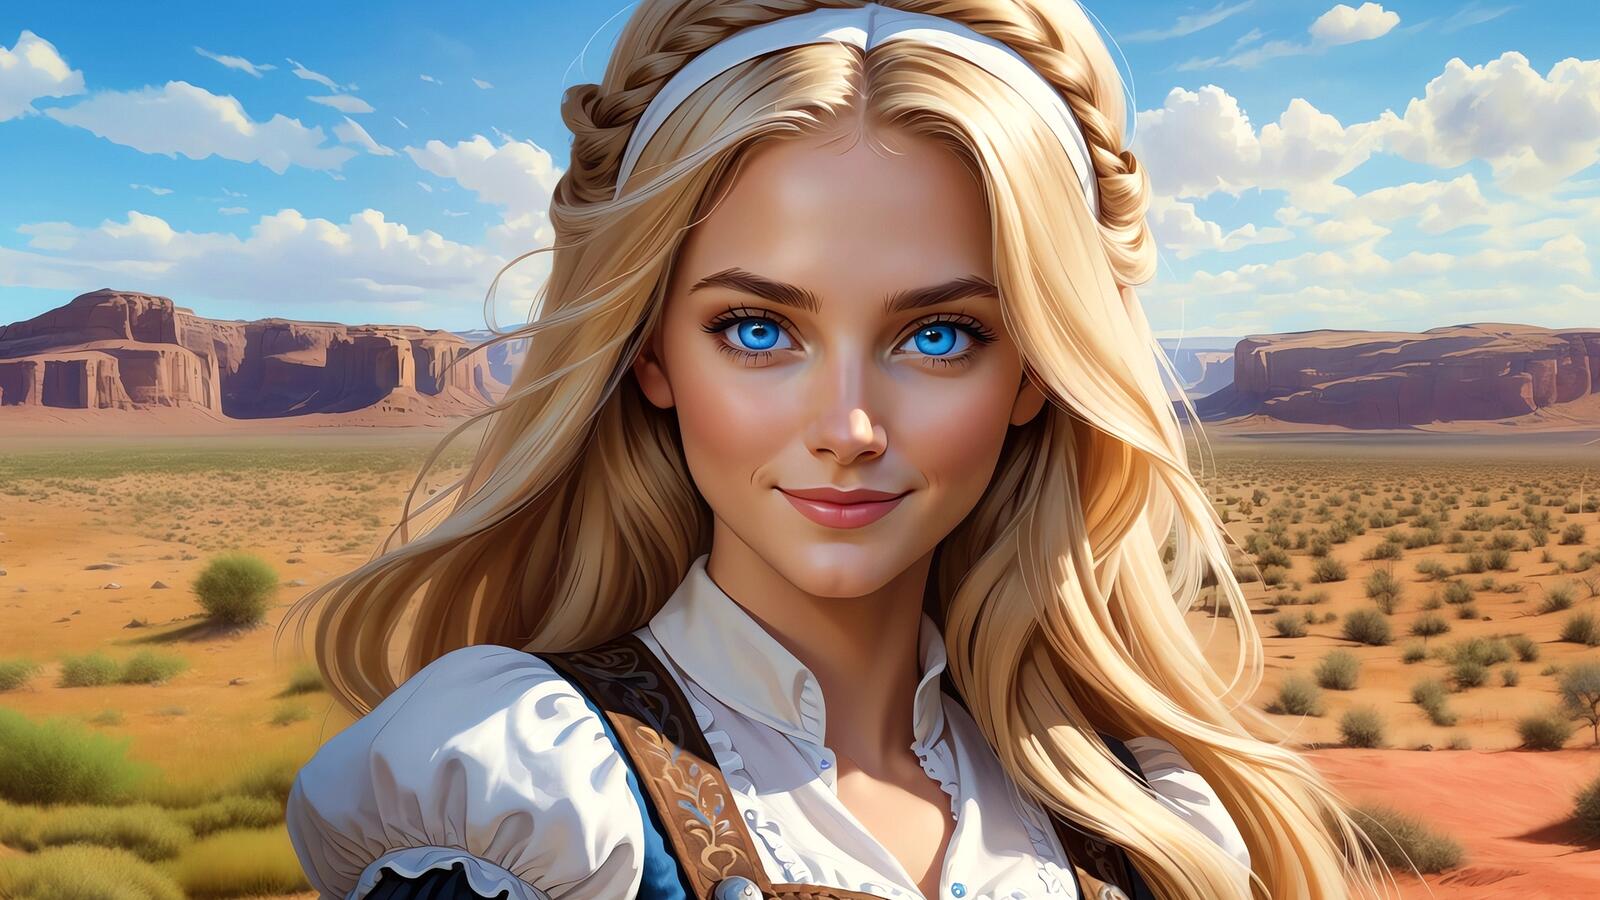 Бесплатное фото Портрет девушки блондинки на фоне пустыни